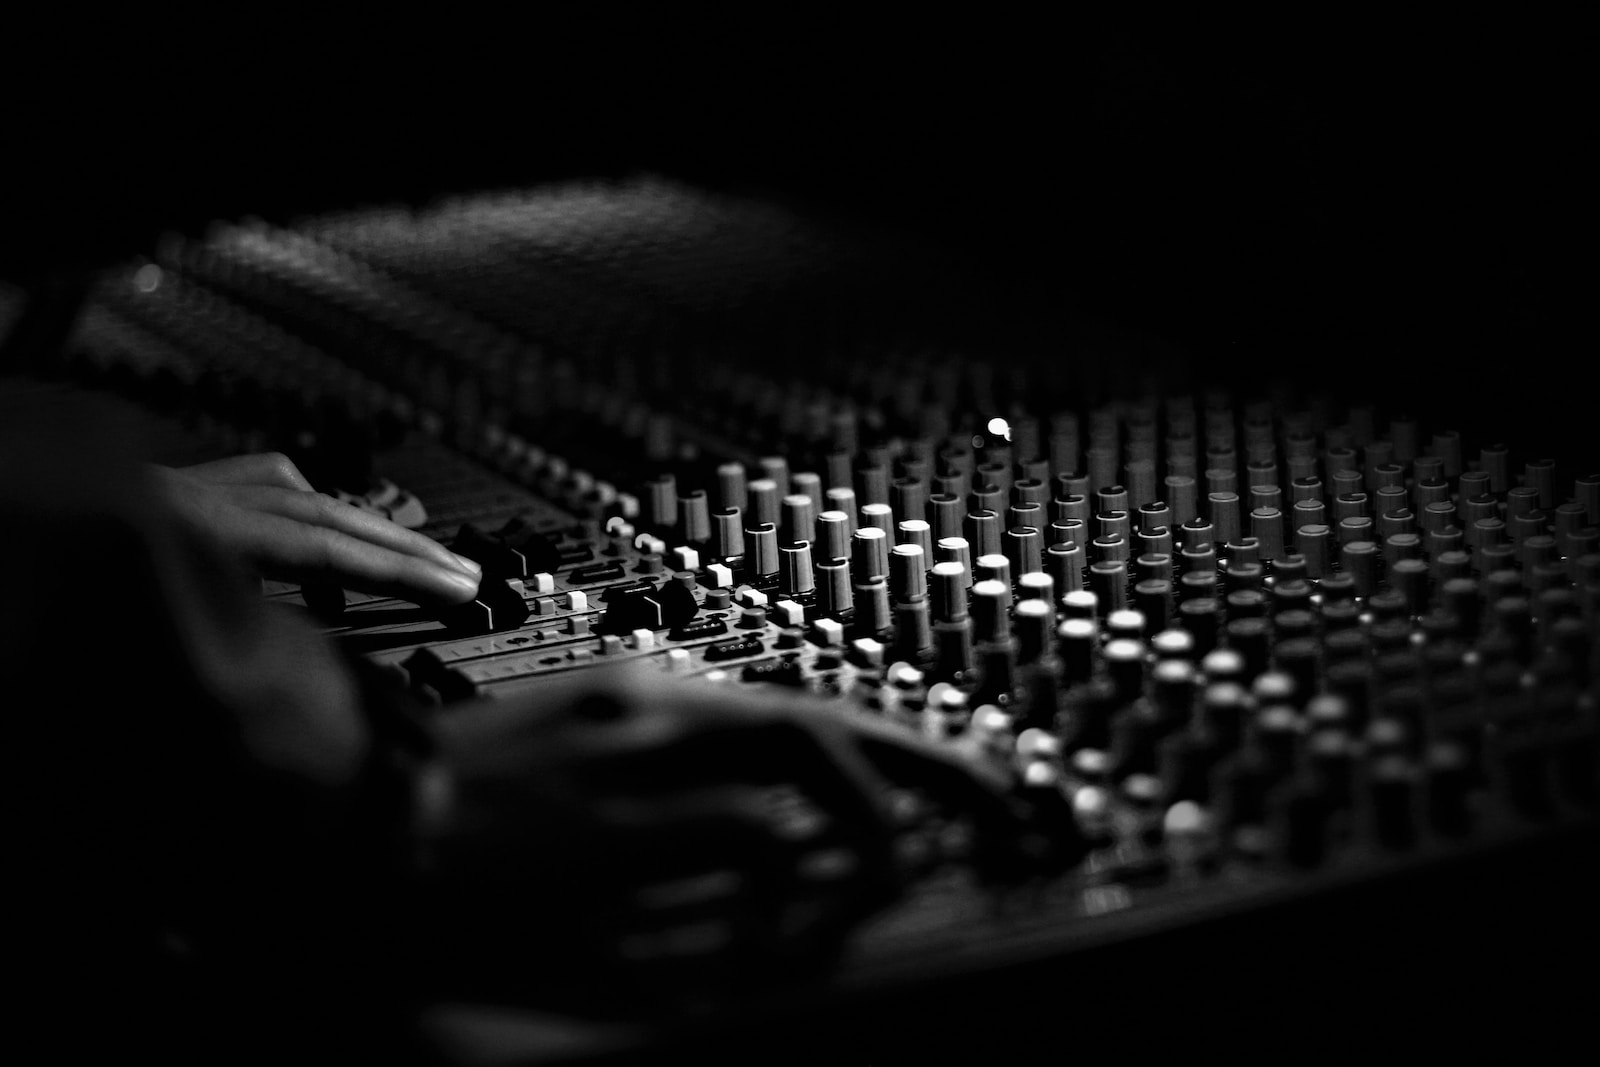 Le mixage et mastering audio pour la musique